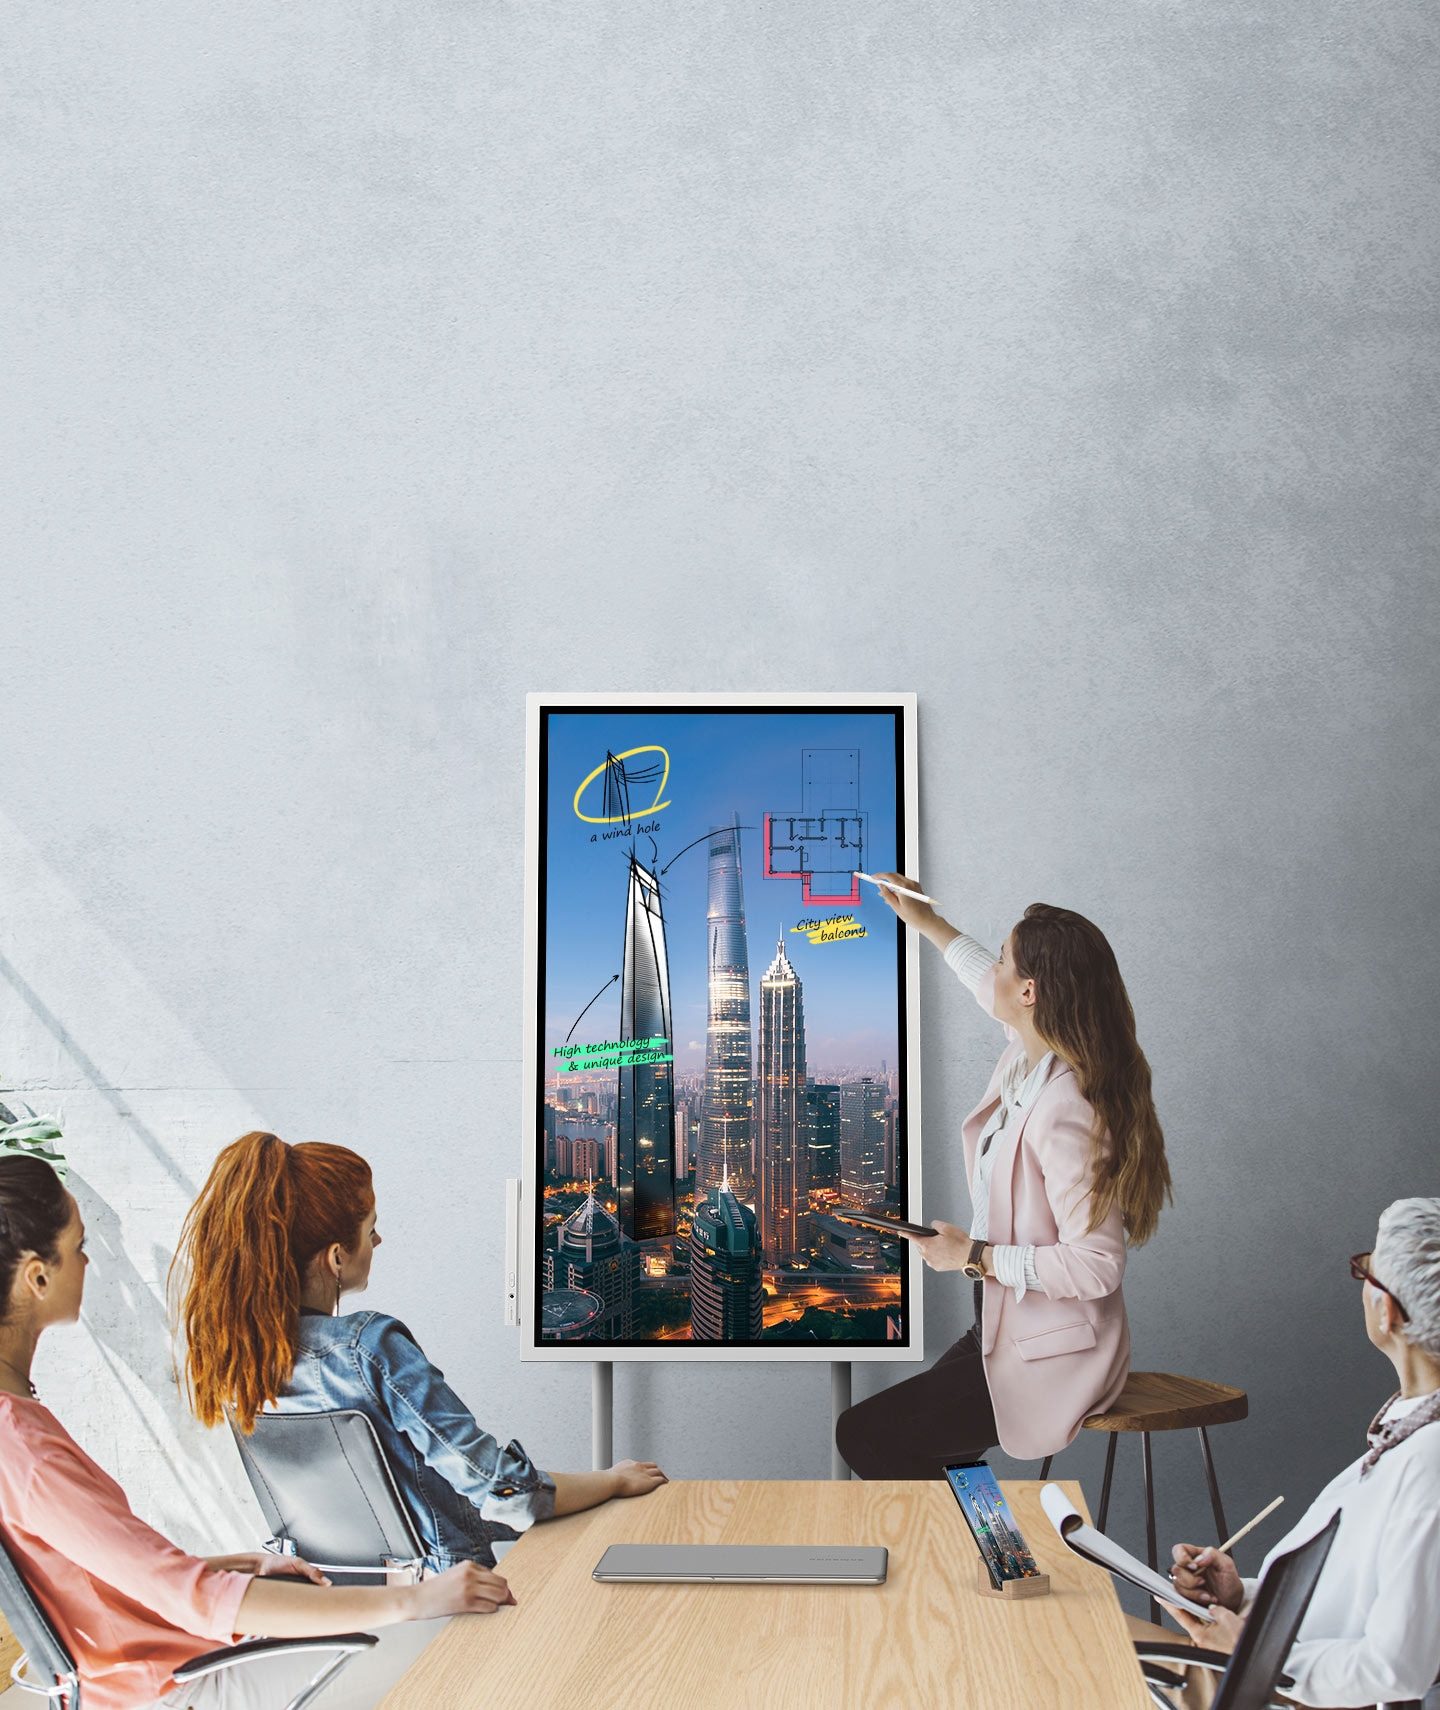 Una imagen que muestra a cuatro personas en una reunión donde se conectan un dispositivo Samsung Flip y un teléfono inteligente, mostrando las mismas imágenes. Miran la pantalla del Samsung Flip posicionado en modo Portait y dos de ellos toman notas.